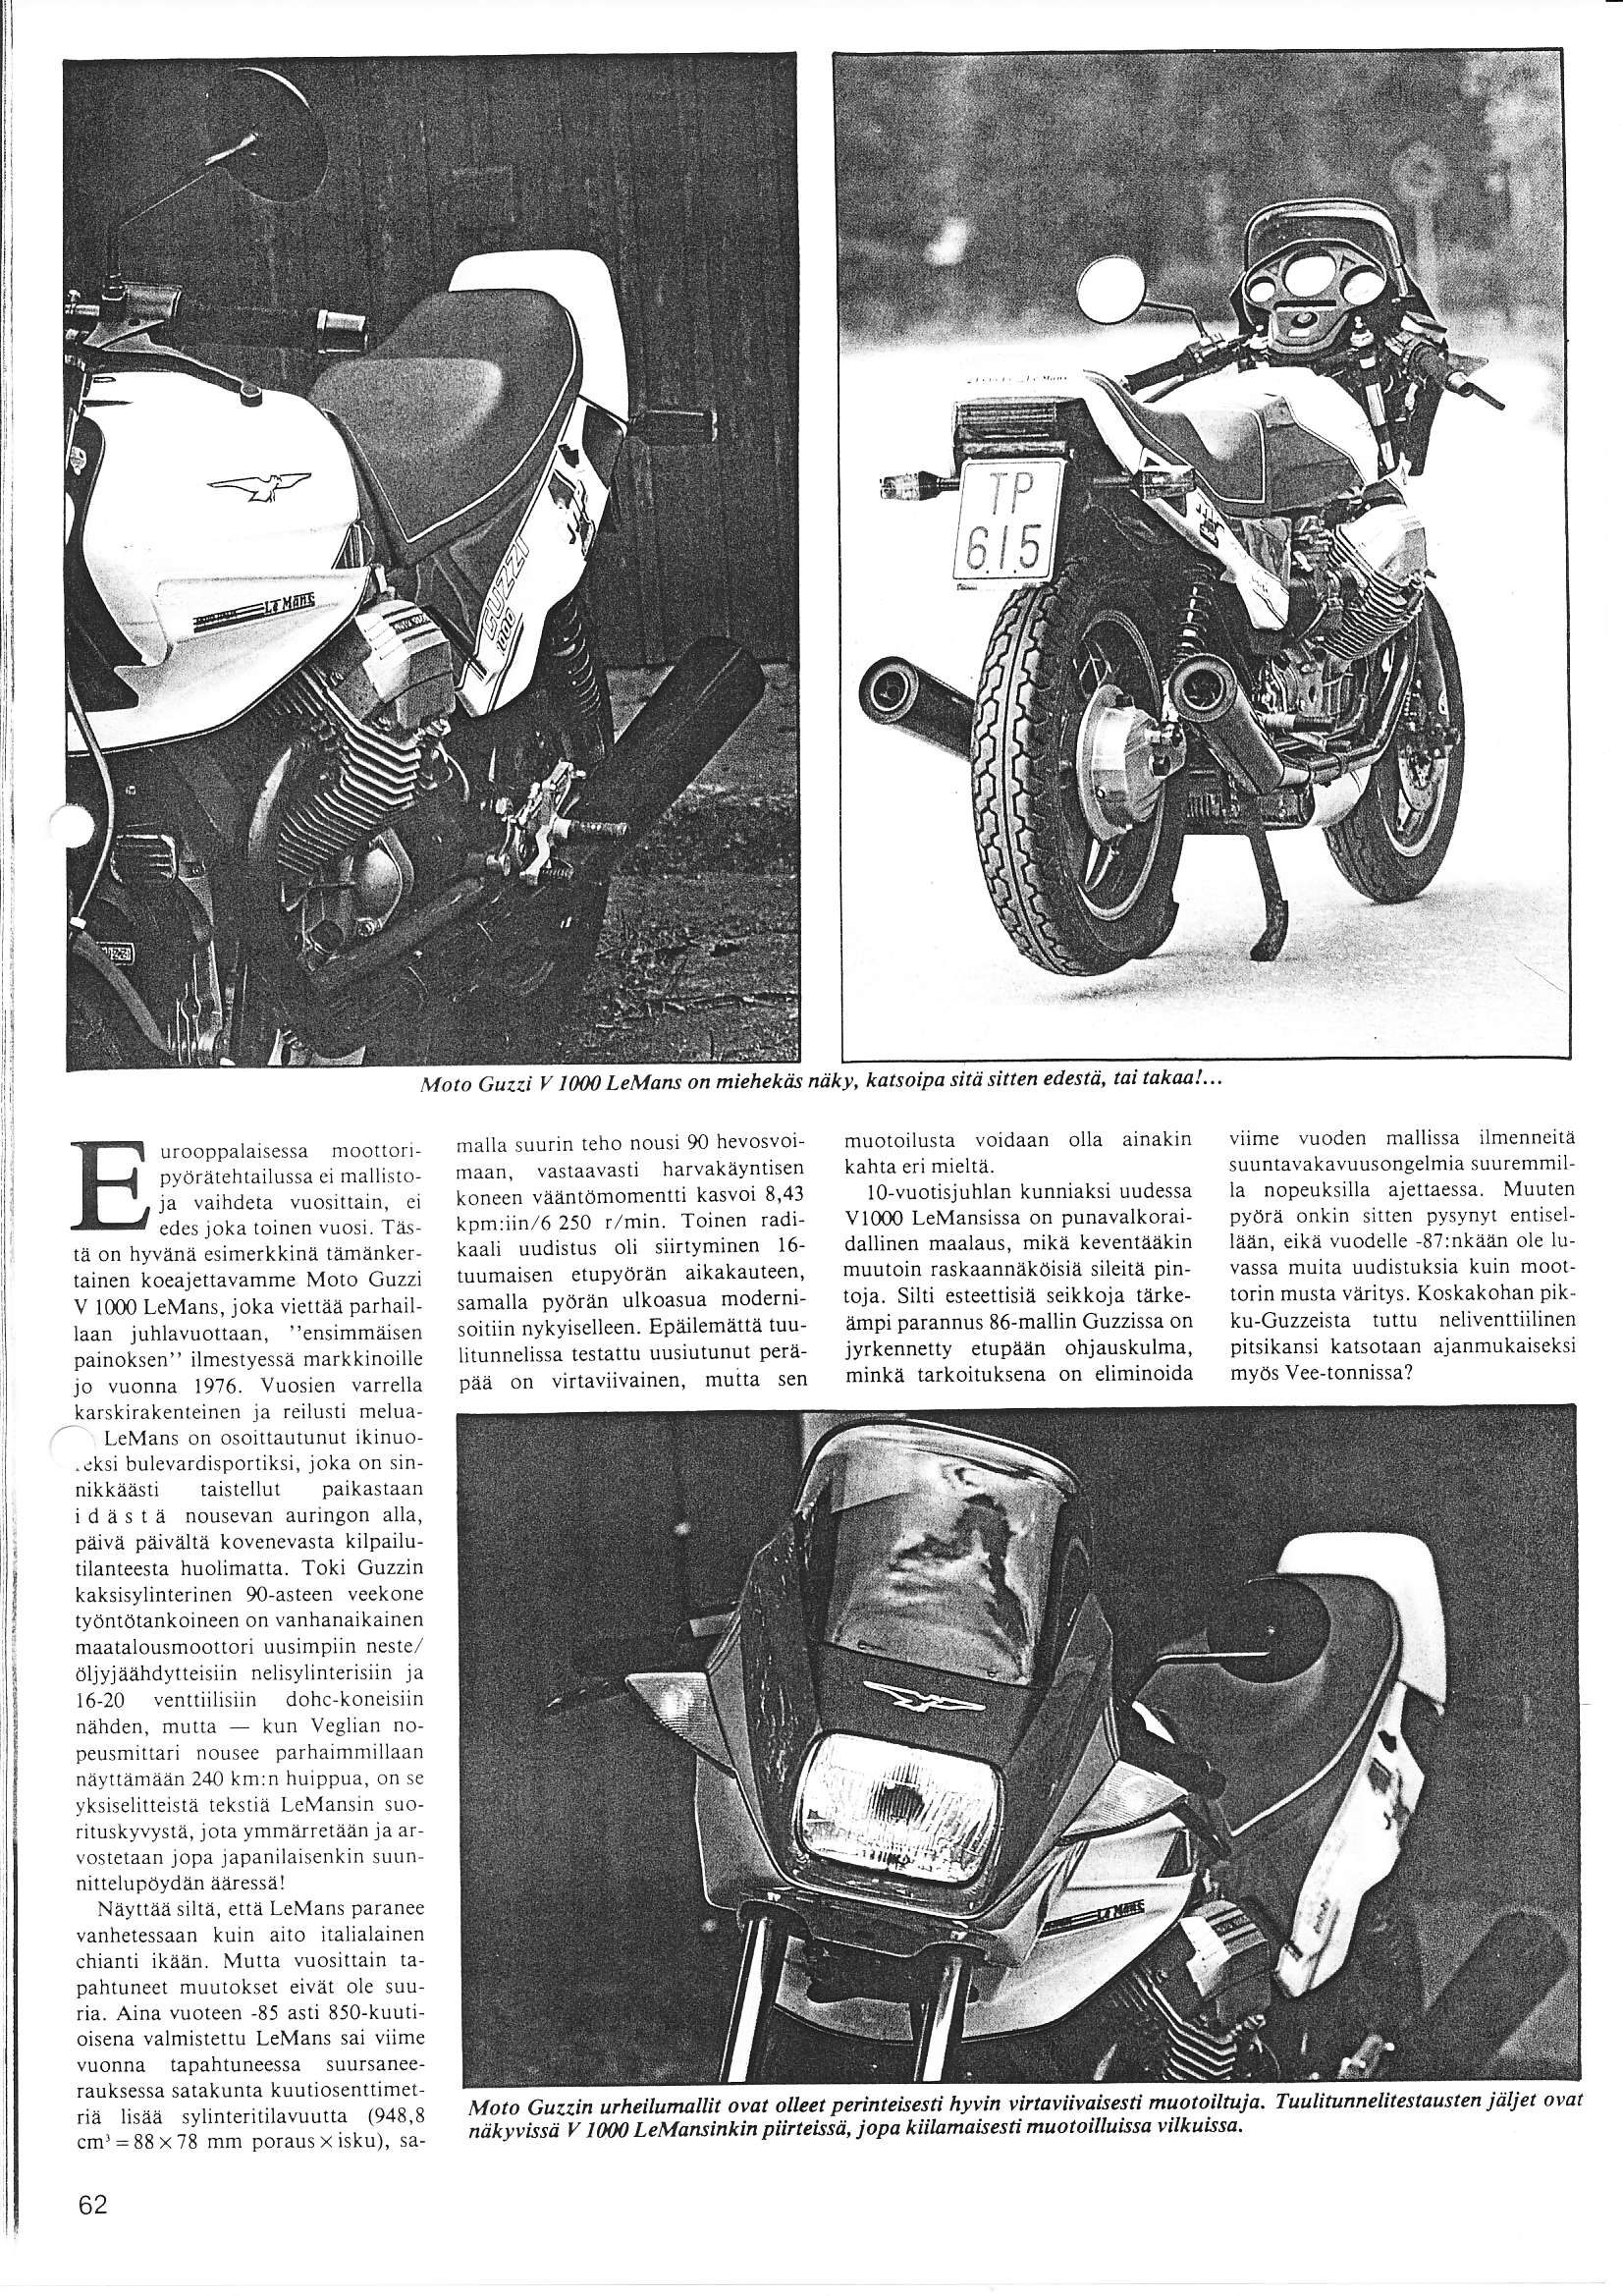 I l lr Moto Guazi y I0110 LeMons on miehekais ndky' katsoipa sitd sitten edestä, tai takaa!"' urooppaialsessa mootlorr pyörätehtailussa ci mallislo ja vaihdeta vuosittain, ci edcs joka toinen vuosi.